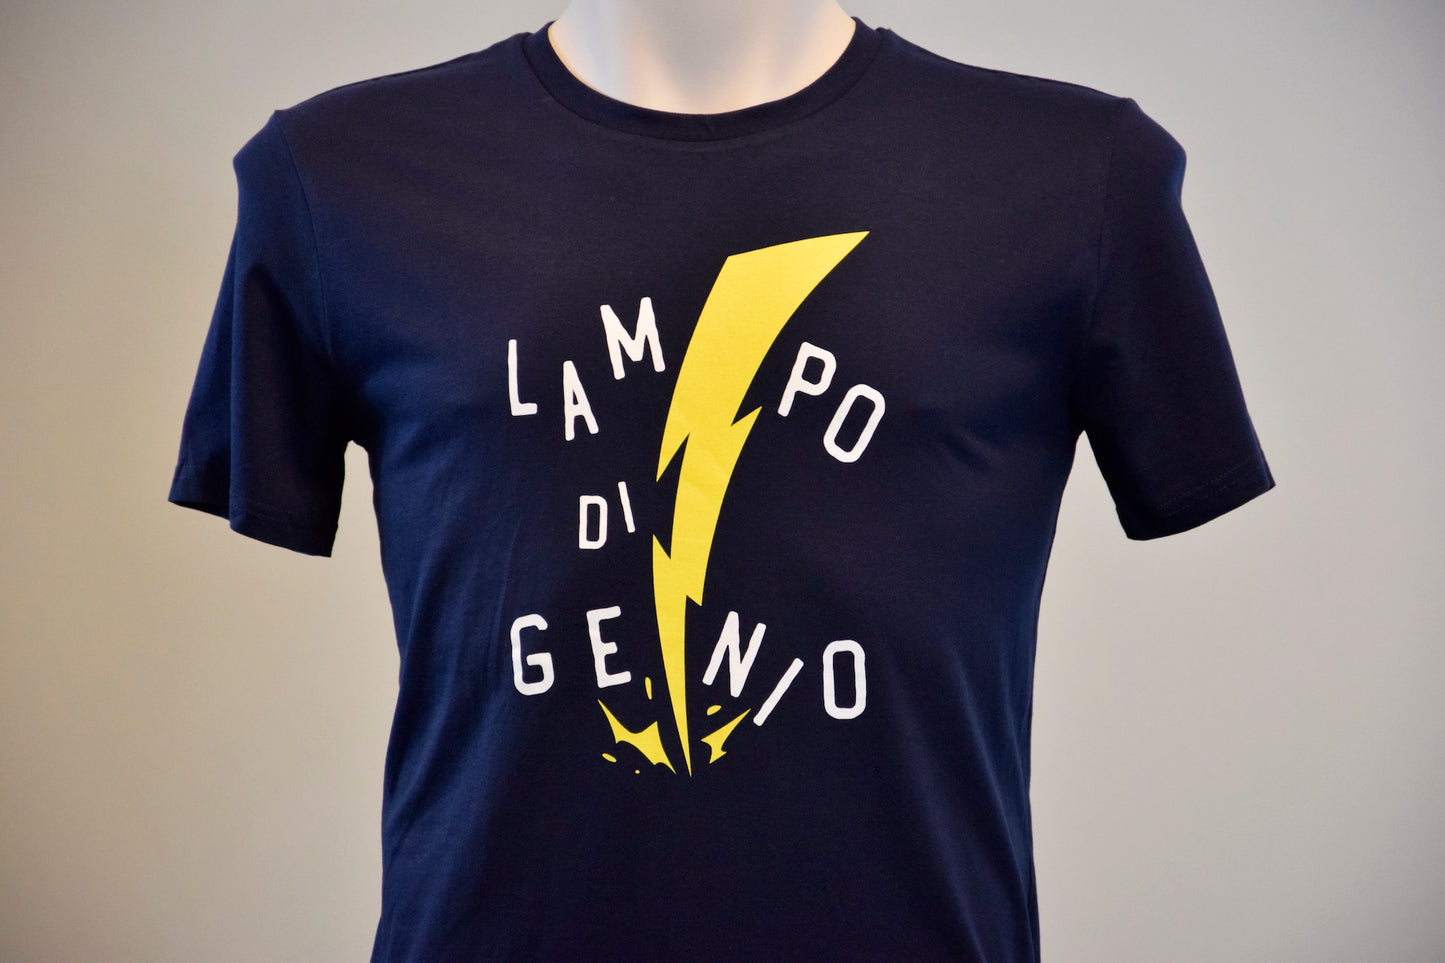 T-shirt 3bmeteo "Lampo di genio"